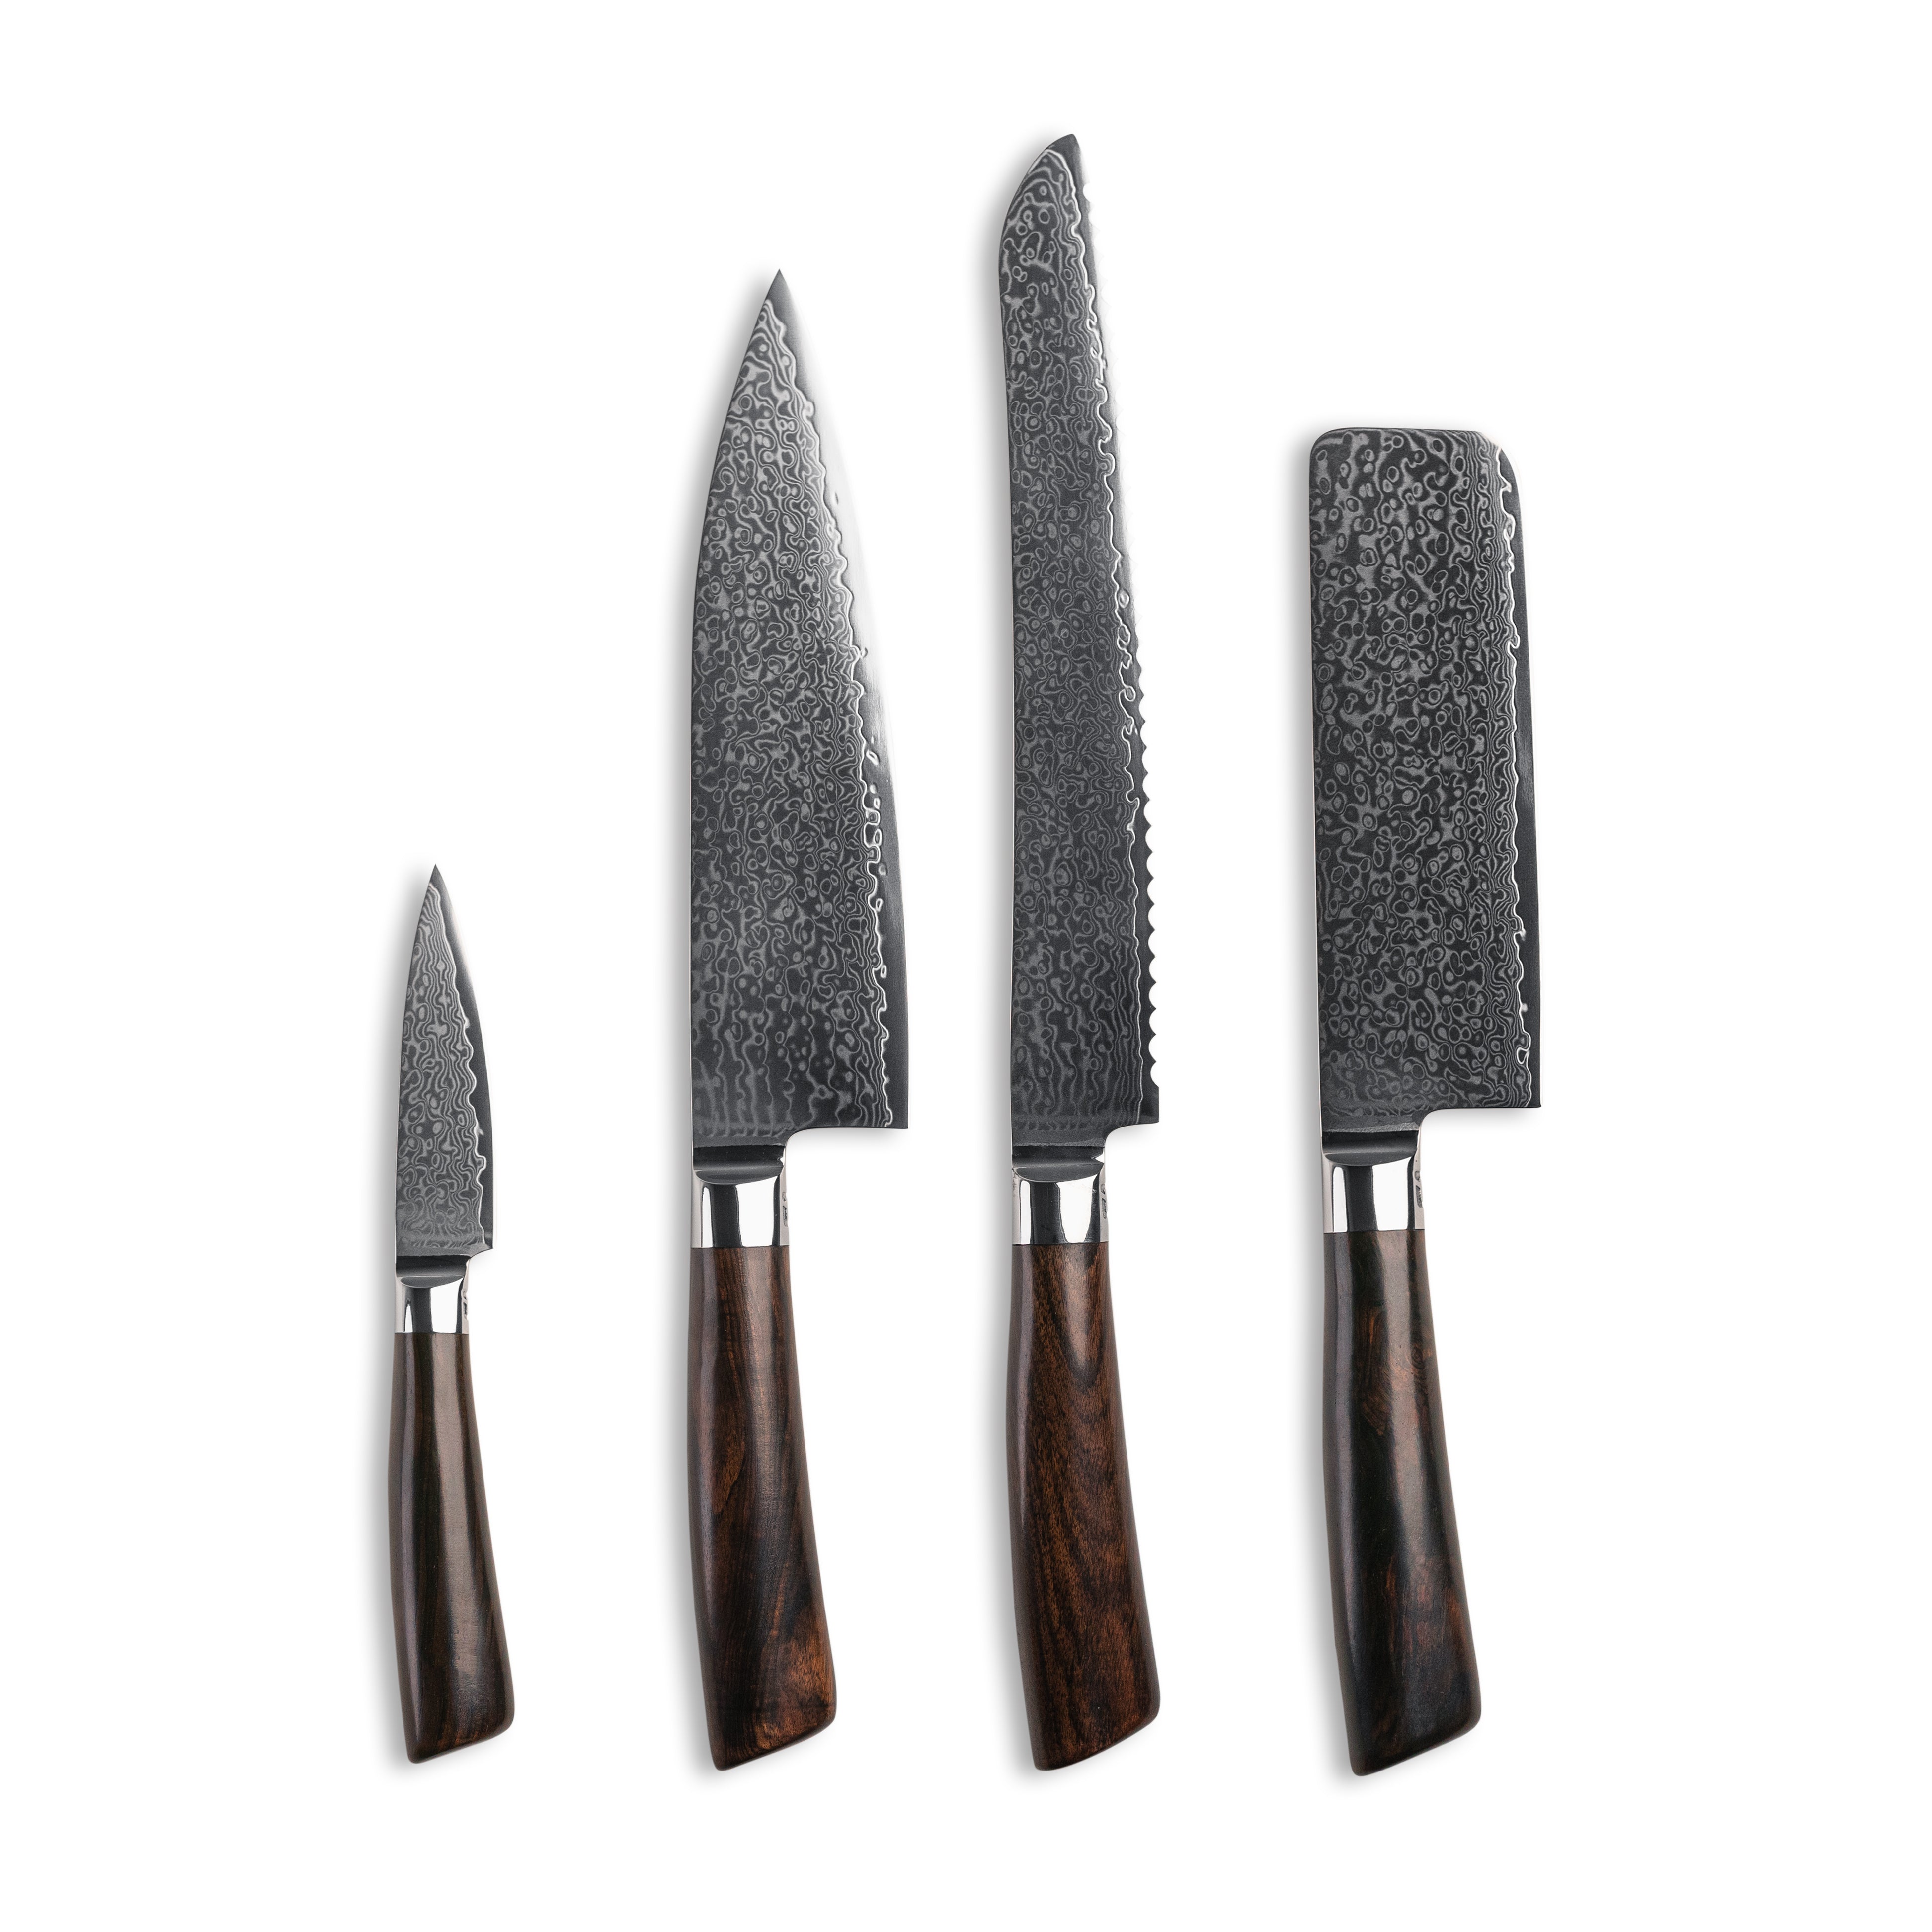 Knivsæt med 4 knive; urtekniv, kokkekniv, brødkniv og en nakiri kniv